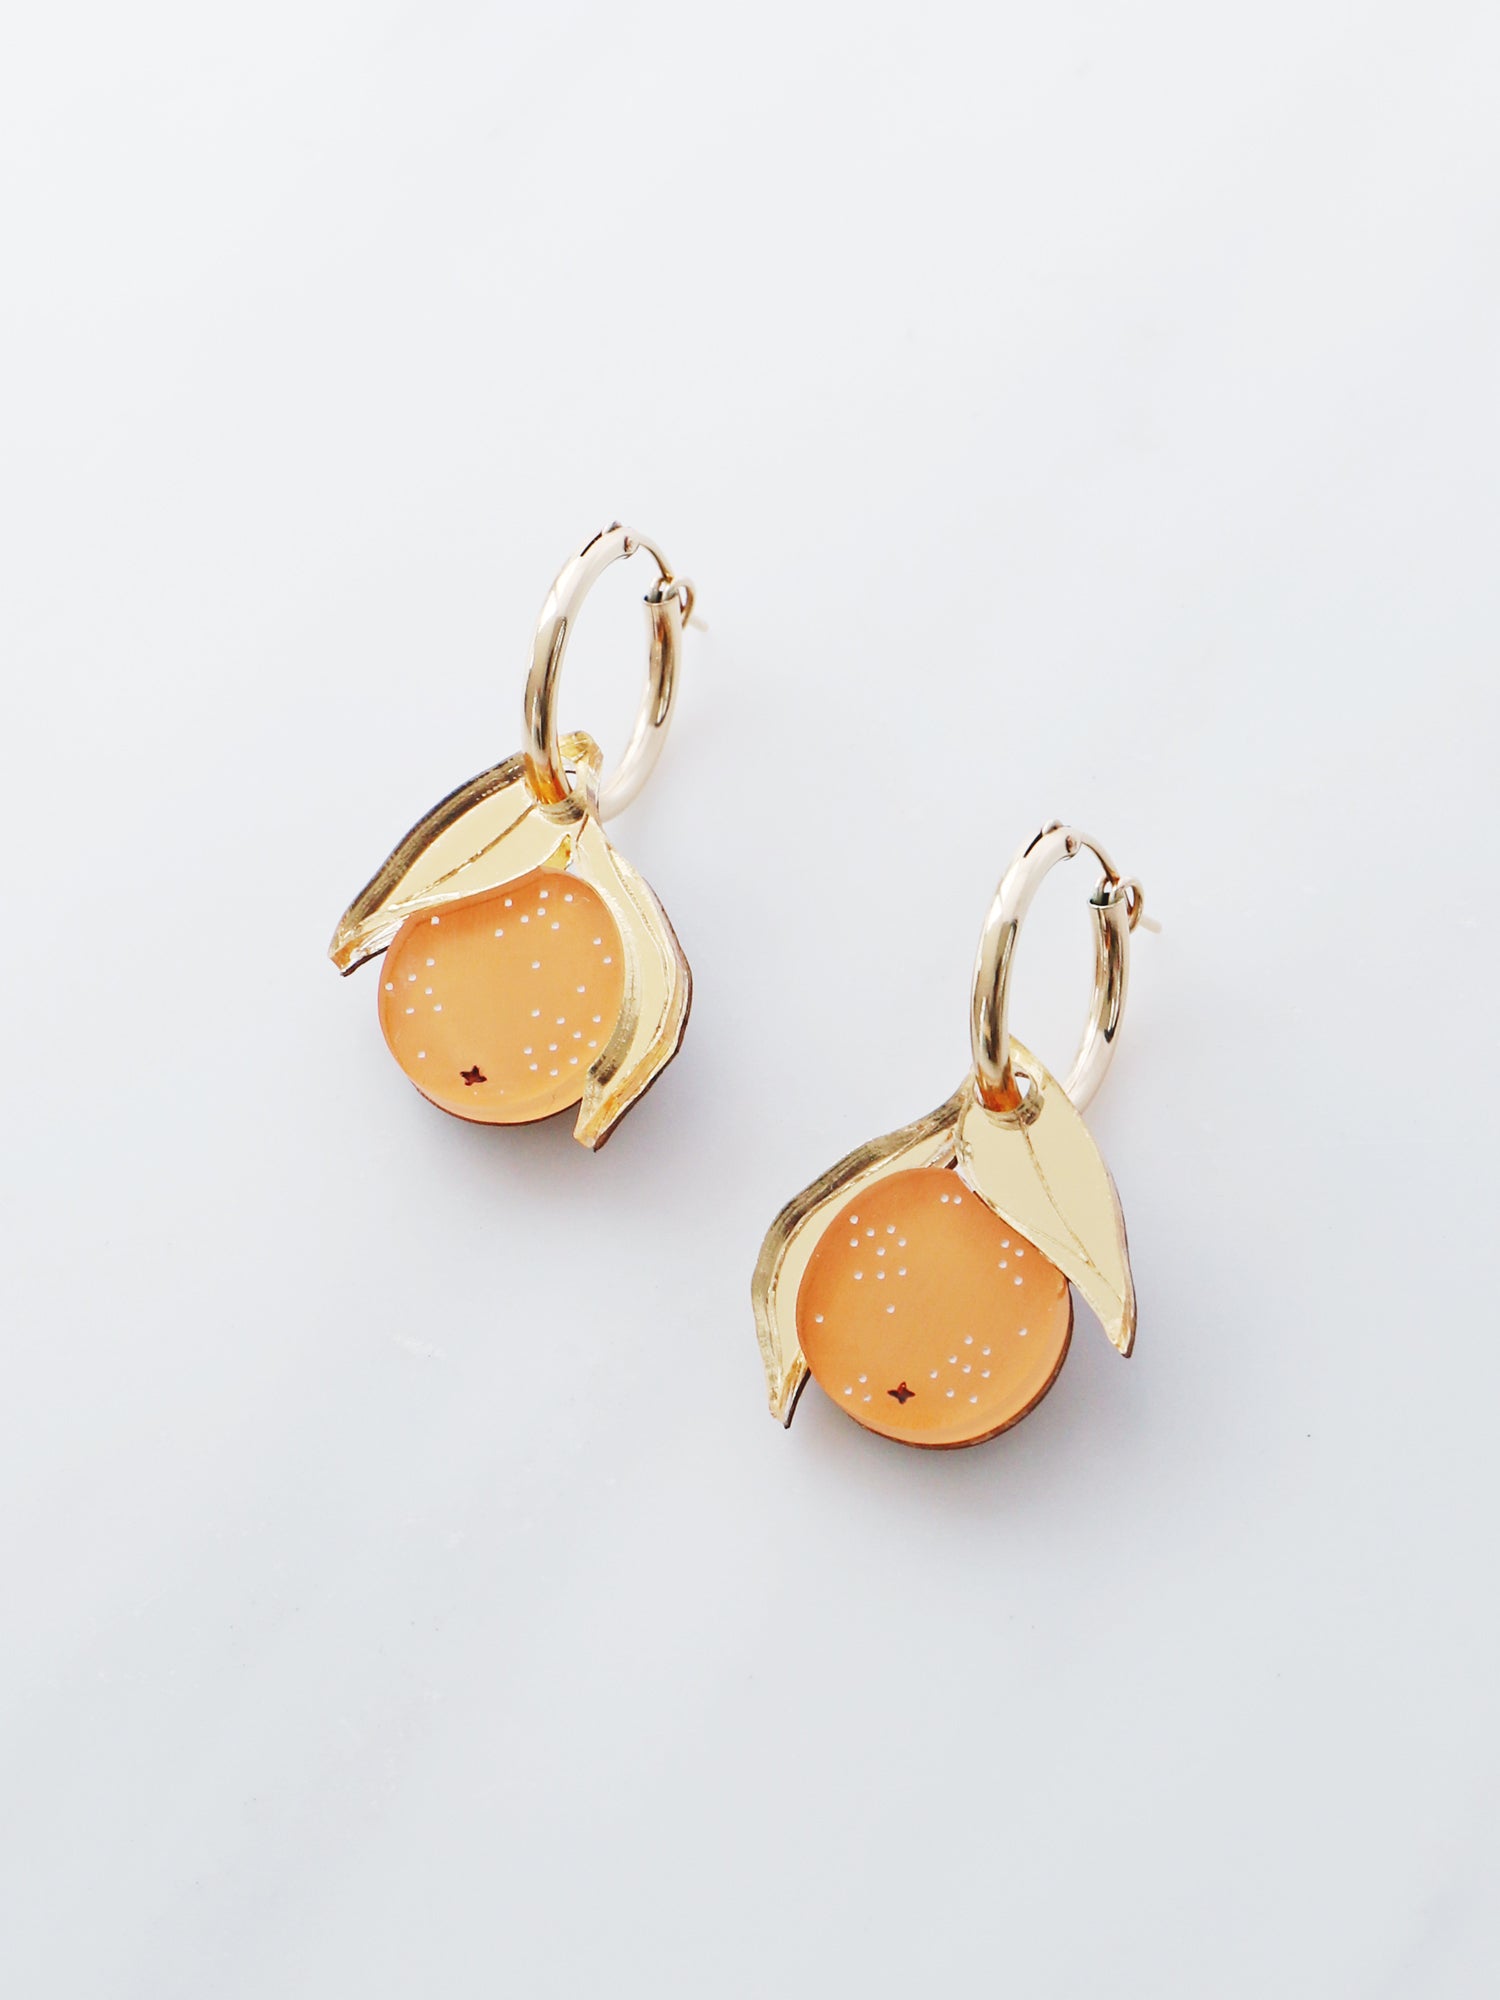 Mini Orange Hoops. Original jewellery handmade in the U.K. by Wolf & Moon.